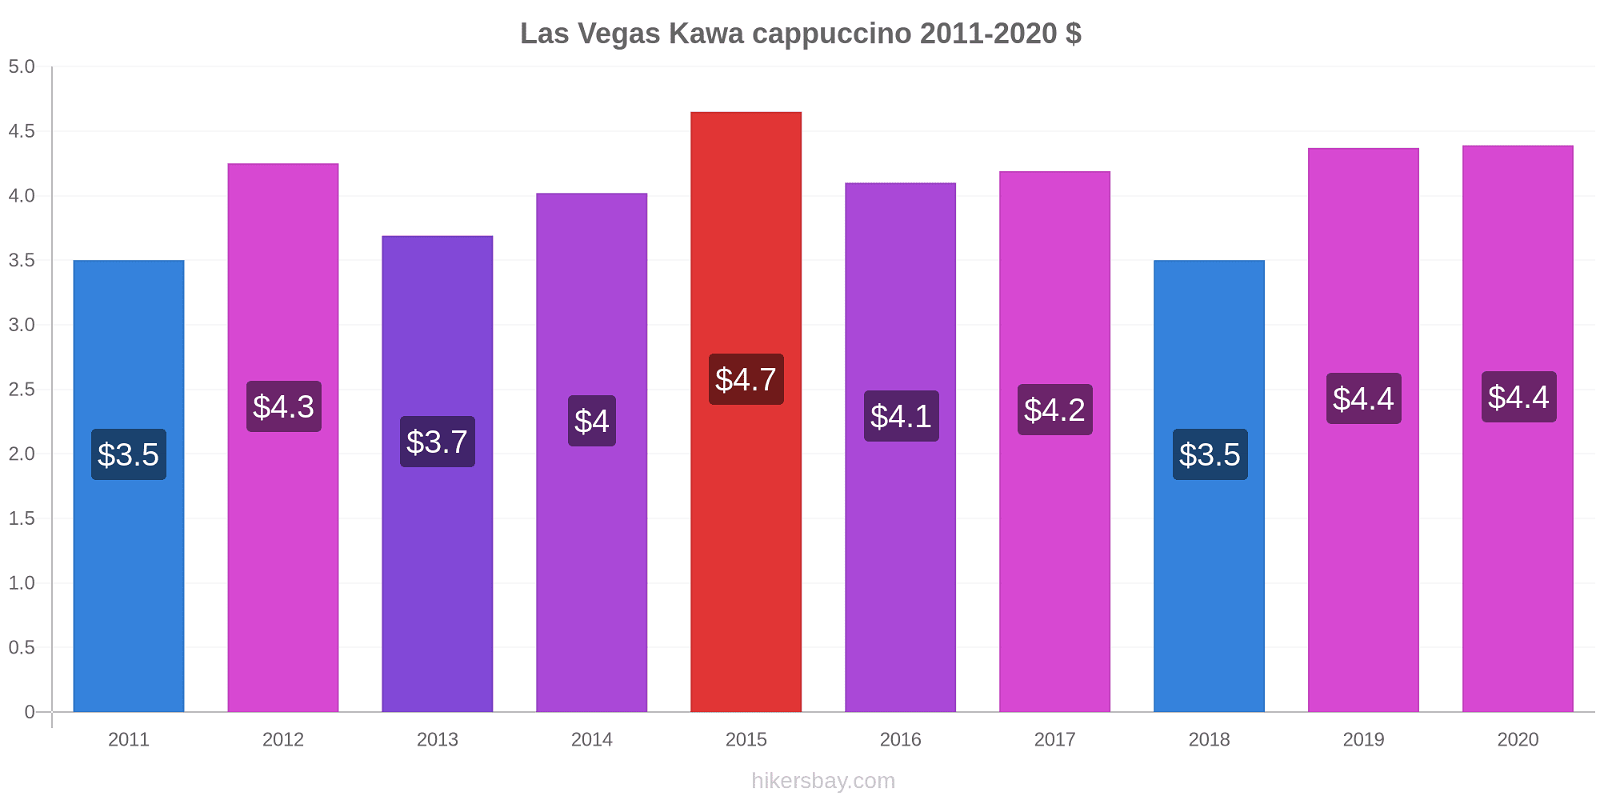 Las Vegas zmiany cen Kawa cappuccino hikersbay.com